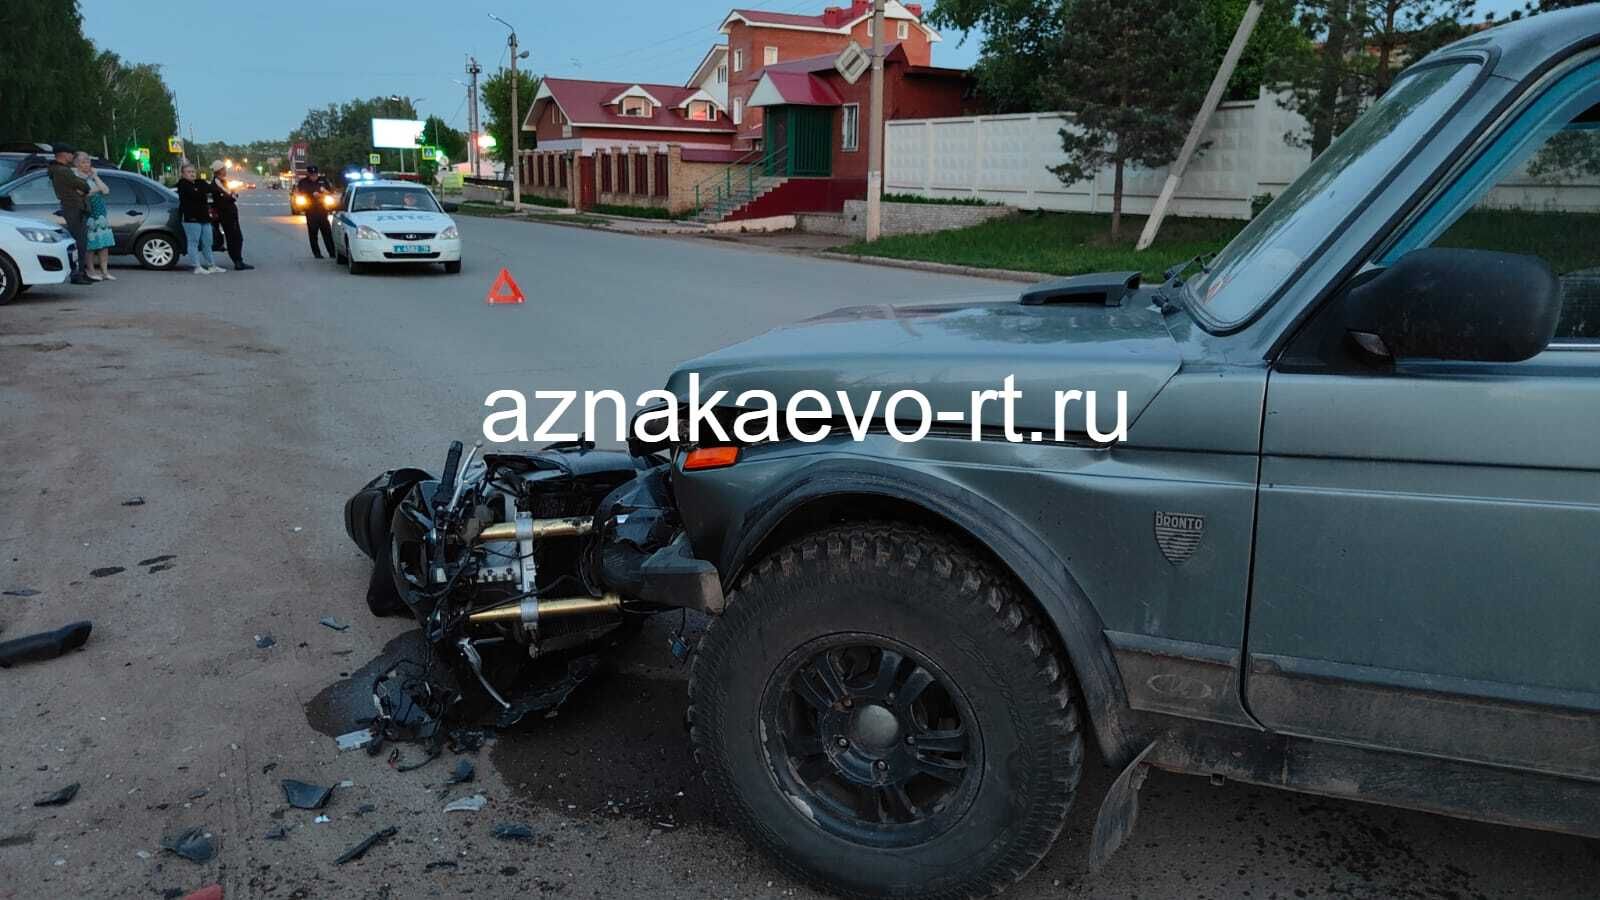 В Азнакаево случилось дорожно-транспортное происшествие с участием мотоциклиста